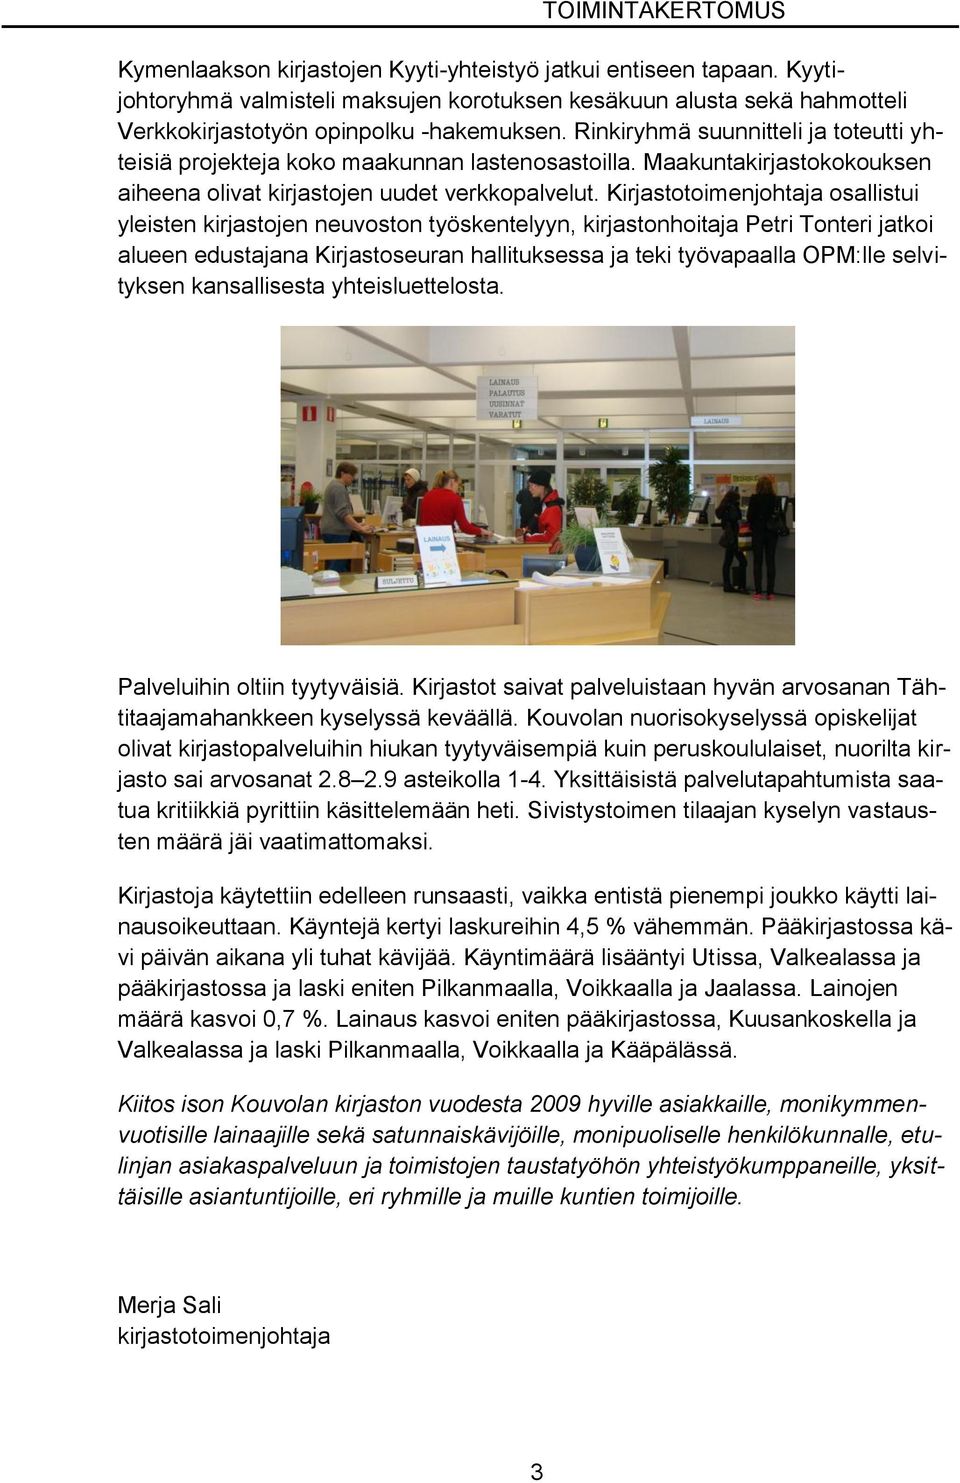 Kirjastotoimenjohtaja osallistui yleisten kirjastojen neuvoston työskentelyyn, kirjastonhoitaja Petri Tonteri jatkoi alueen edustajana Kirjastoseuran hallituksessa ja teki työvapaalla OPM:lle